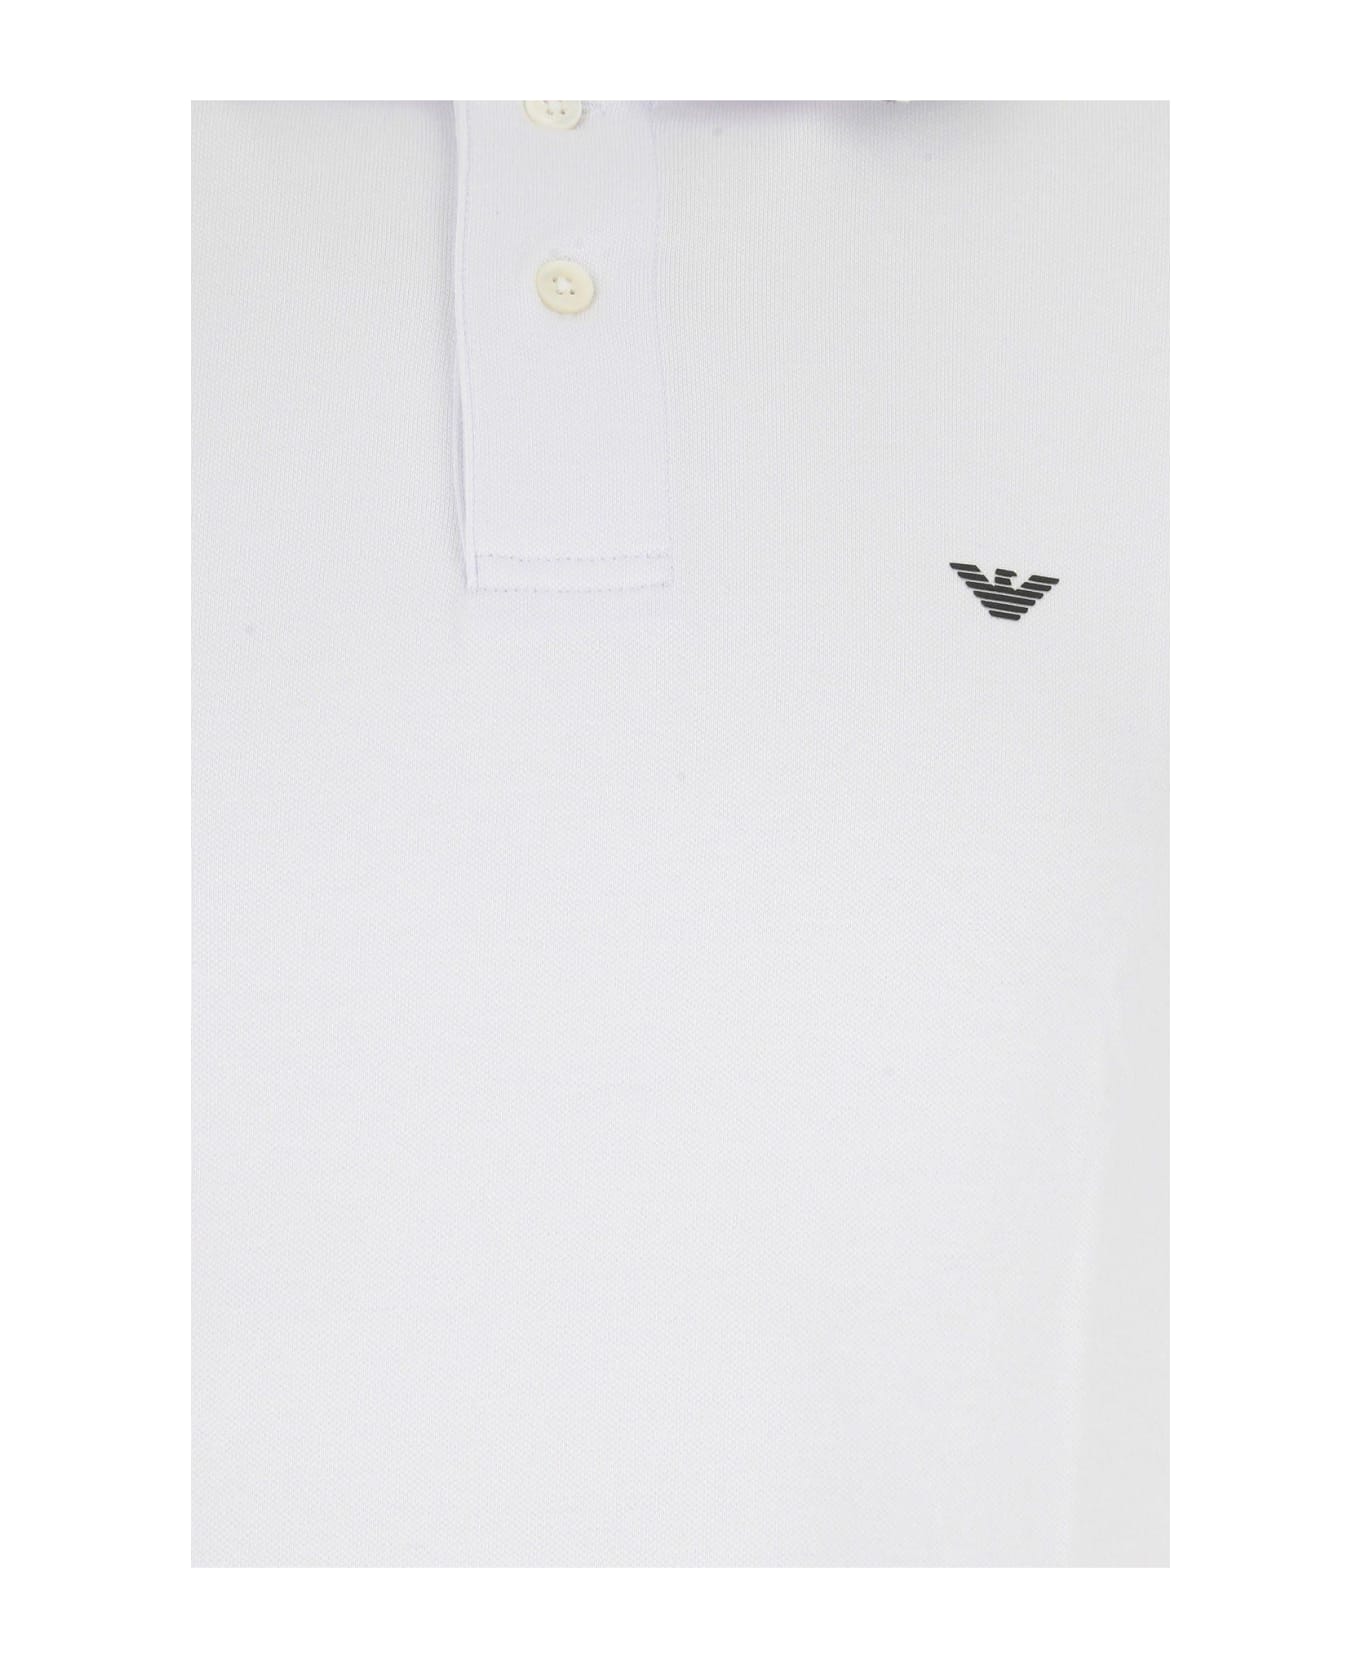 Emporio Armani White Stretch Cotton Polo Shirt - Bianco Ottico シャツ